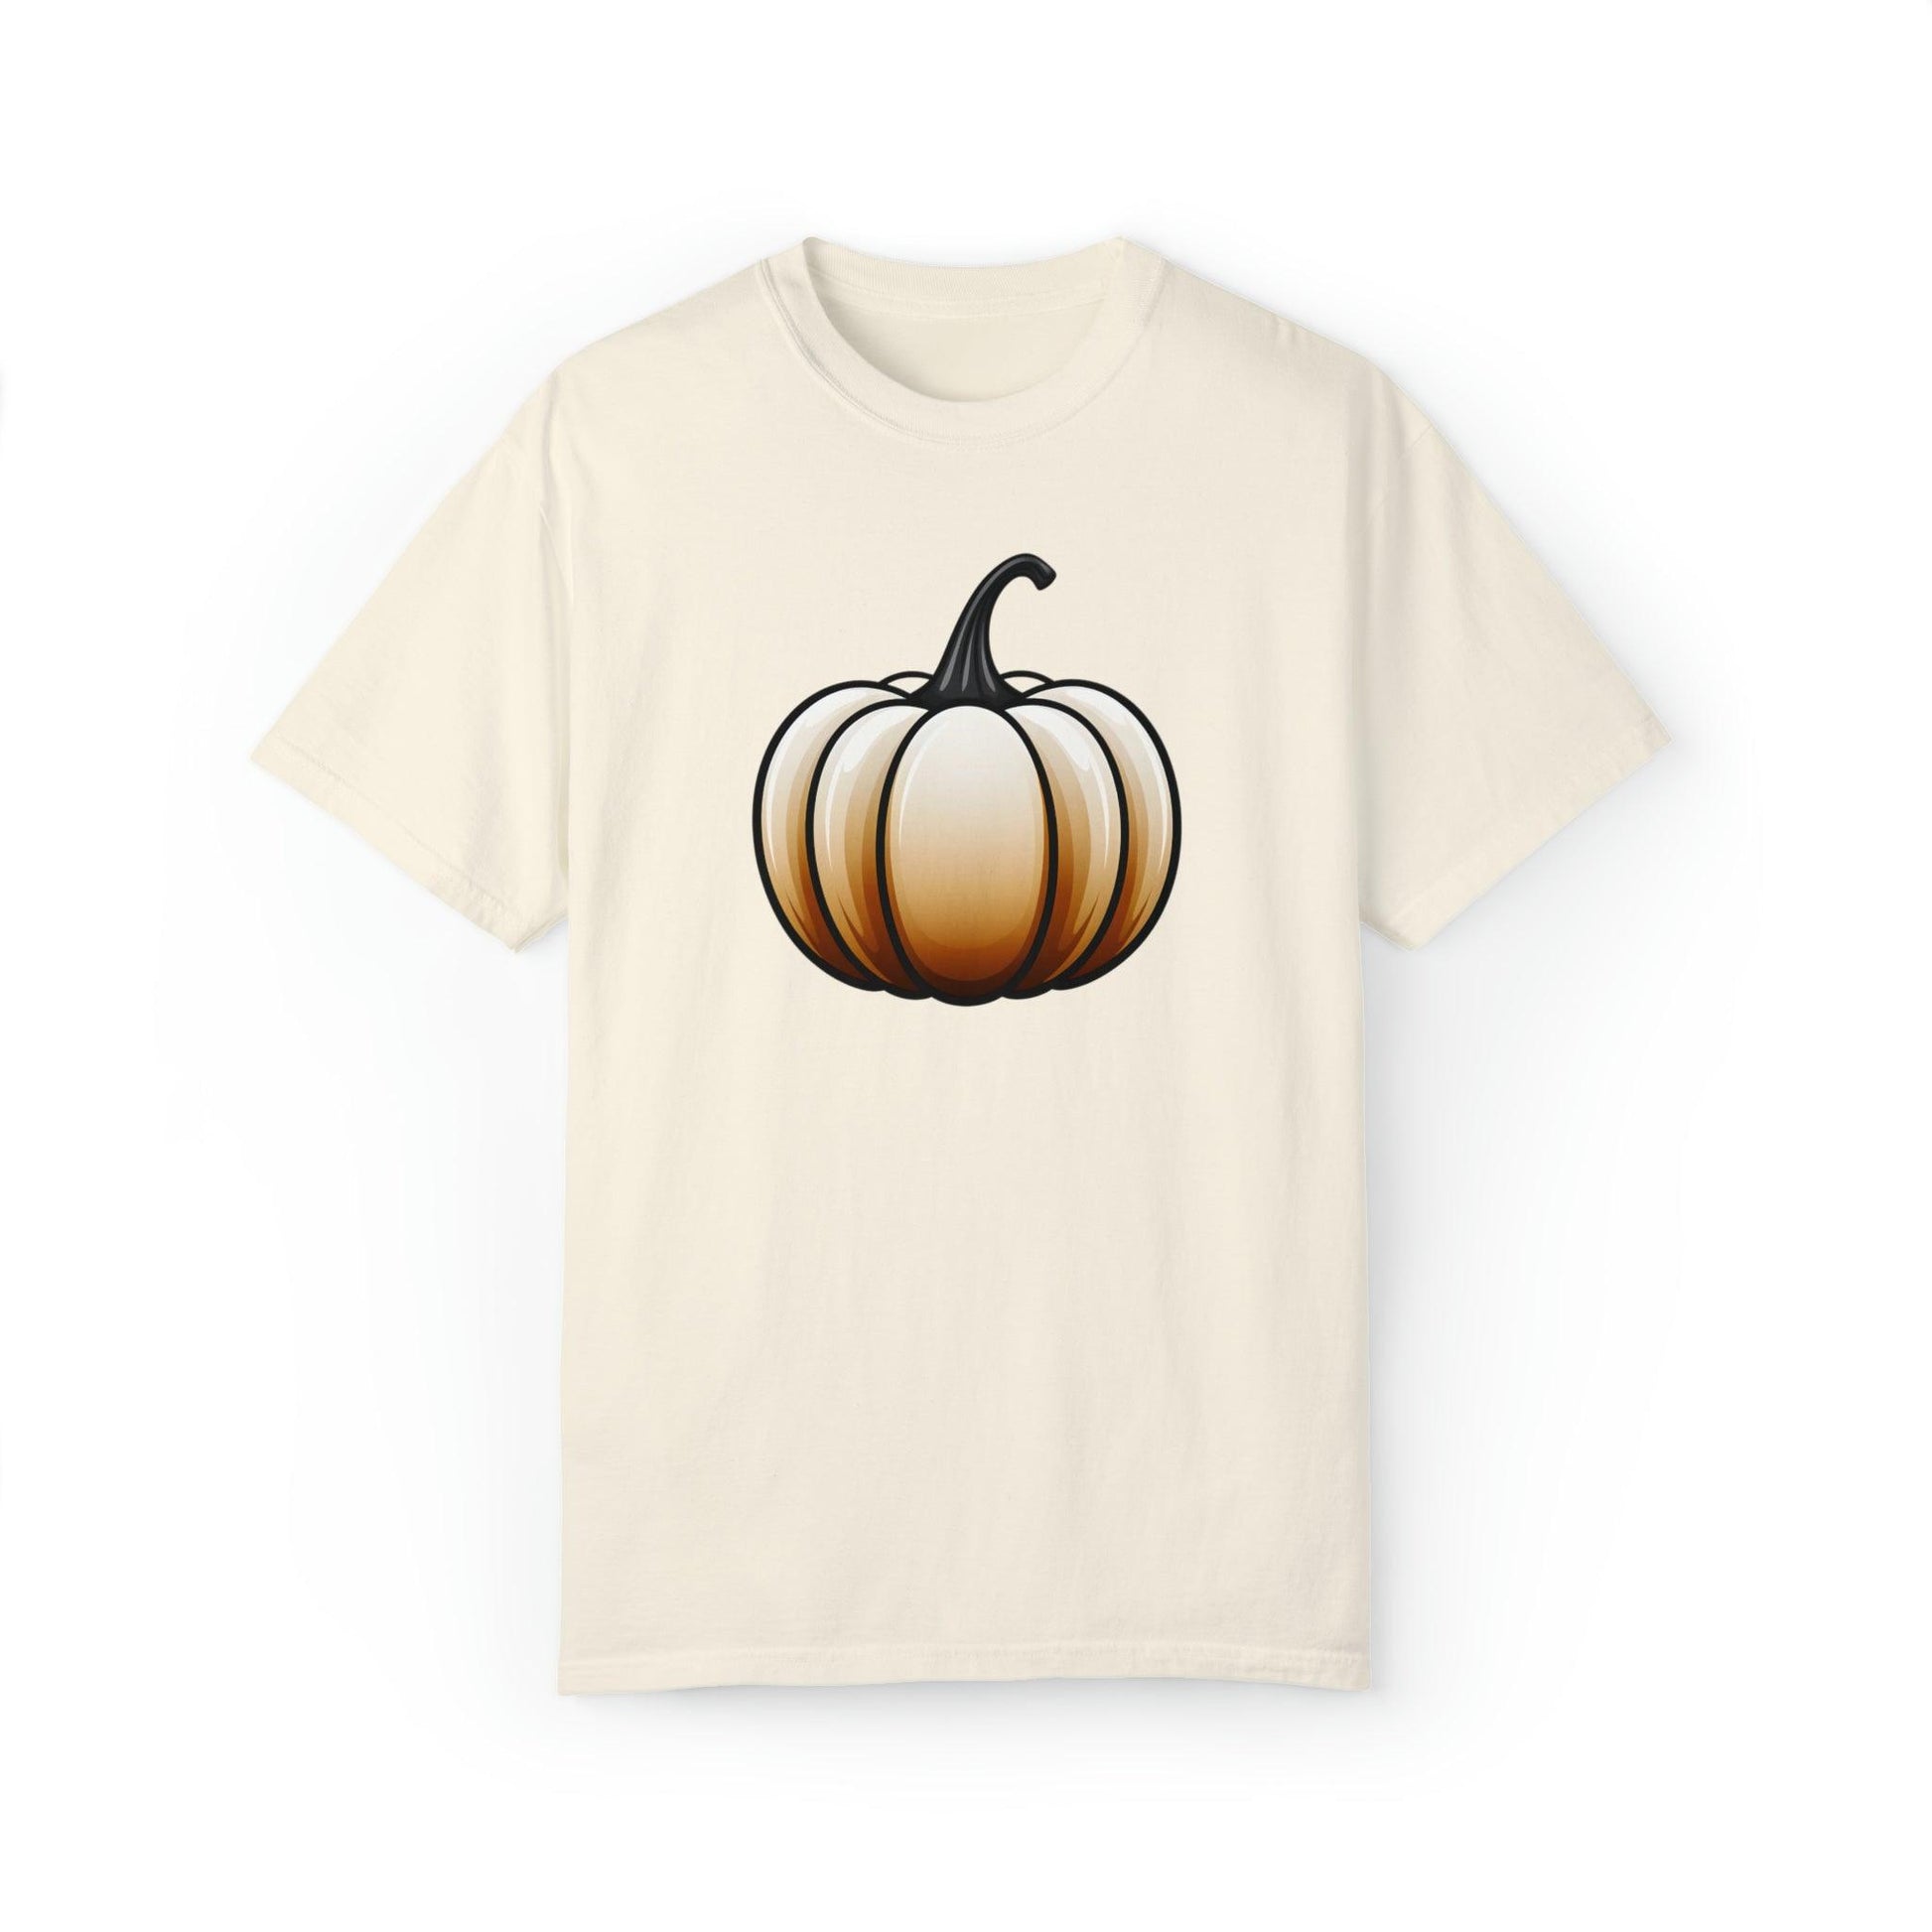 Pumpkin Shirt Halloween Shirt Fall Gift Halloween Costume Pumpkin T Shirt - Cute Pumpkin Tee Fall Shirt Halloween Gift Pumpkin Lover Shirt - Giftsmojo